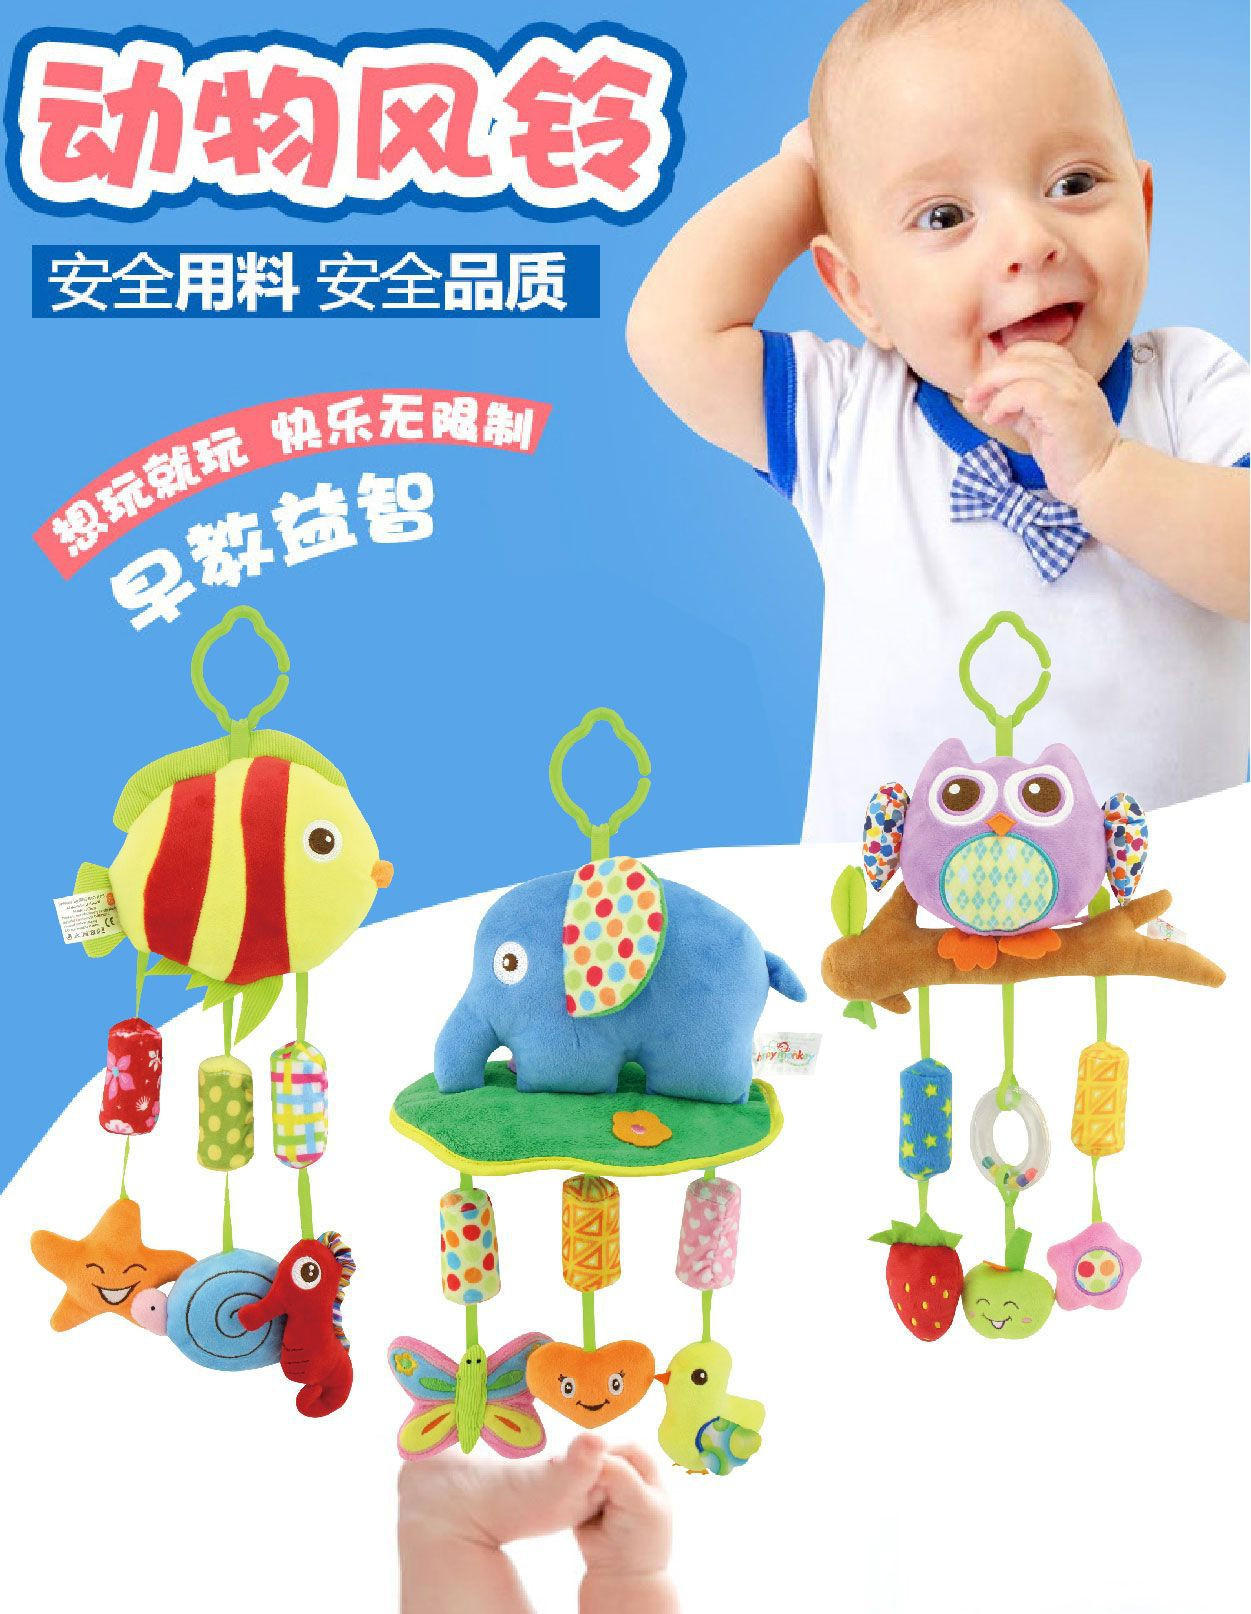 \"开心美猴王景宝婴儿玩具-毛绒摇铃早教玩具-动物造型风铃,产品编号H168020-4\"/